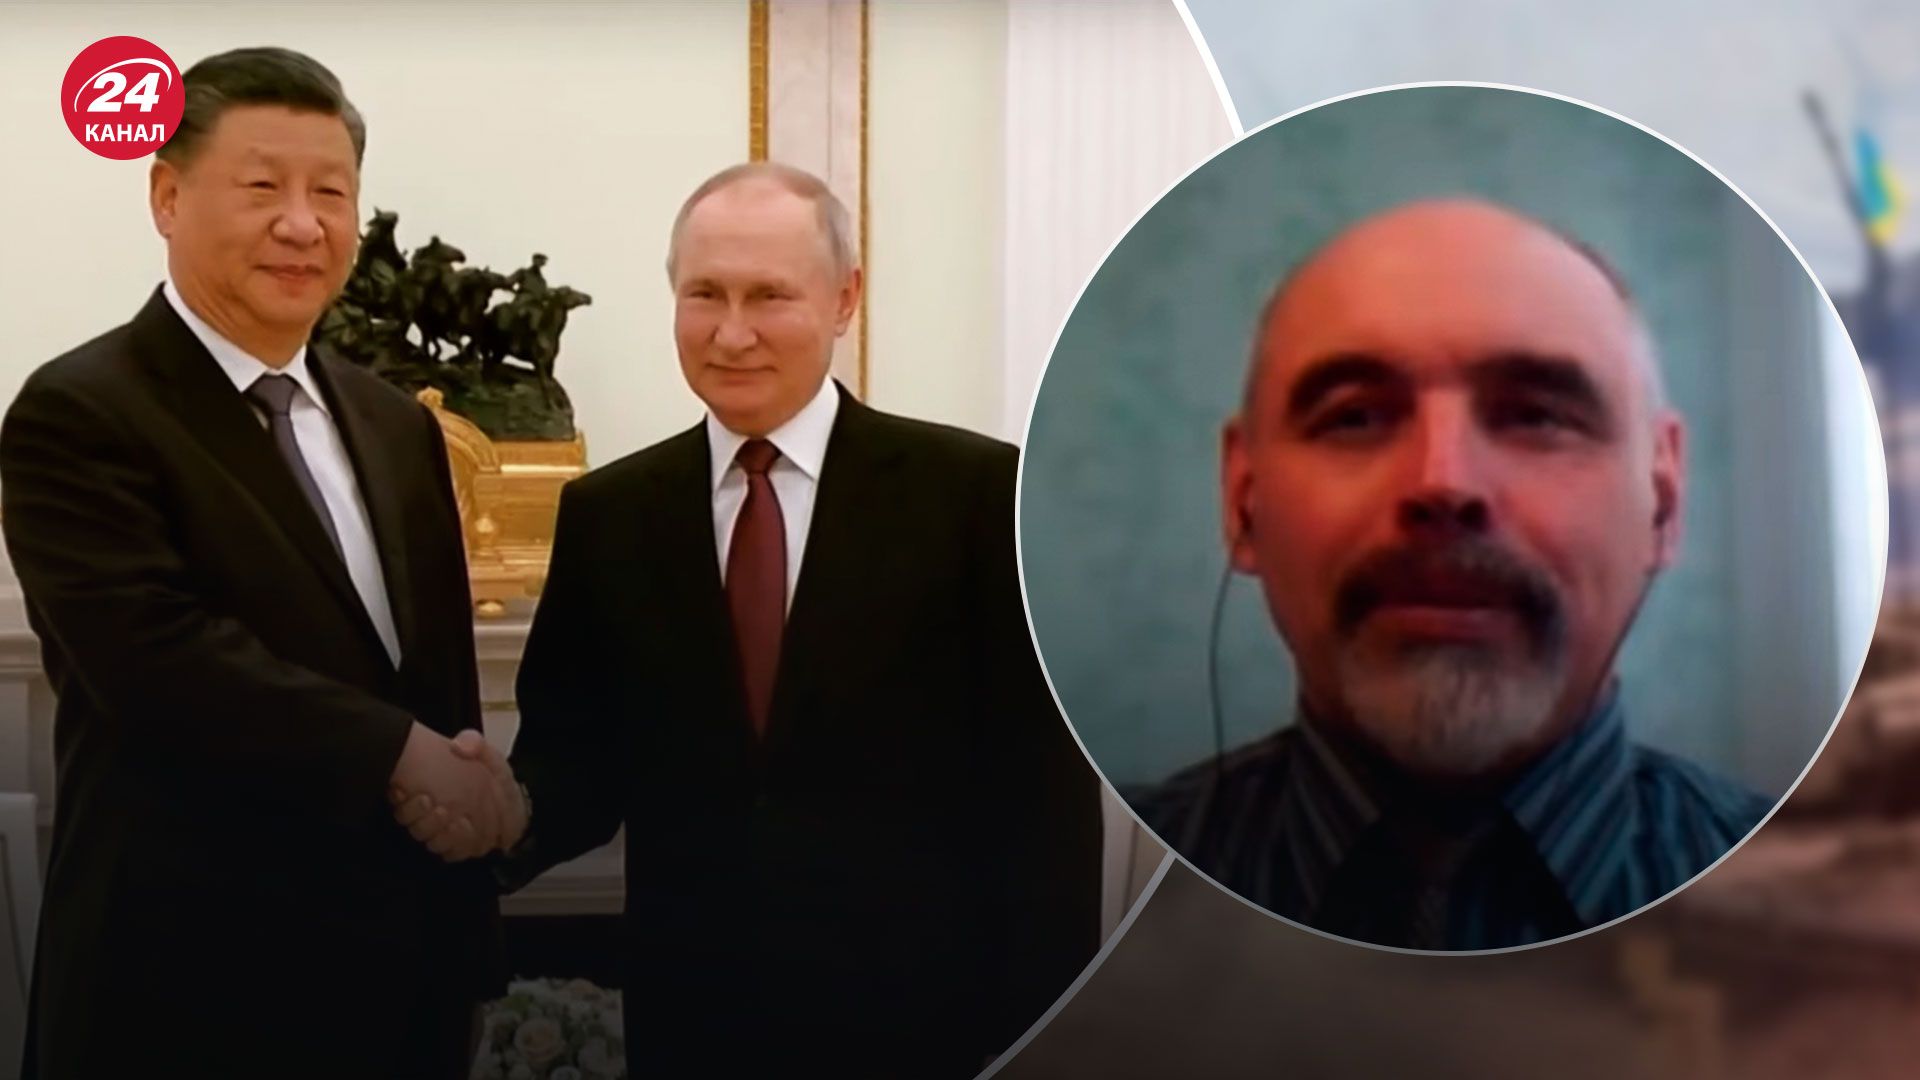 На встрече с Си был настоящий Путин – психолог сказал, что на это указывает – 24 Канал